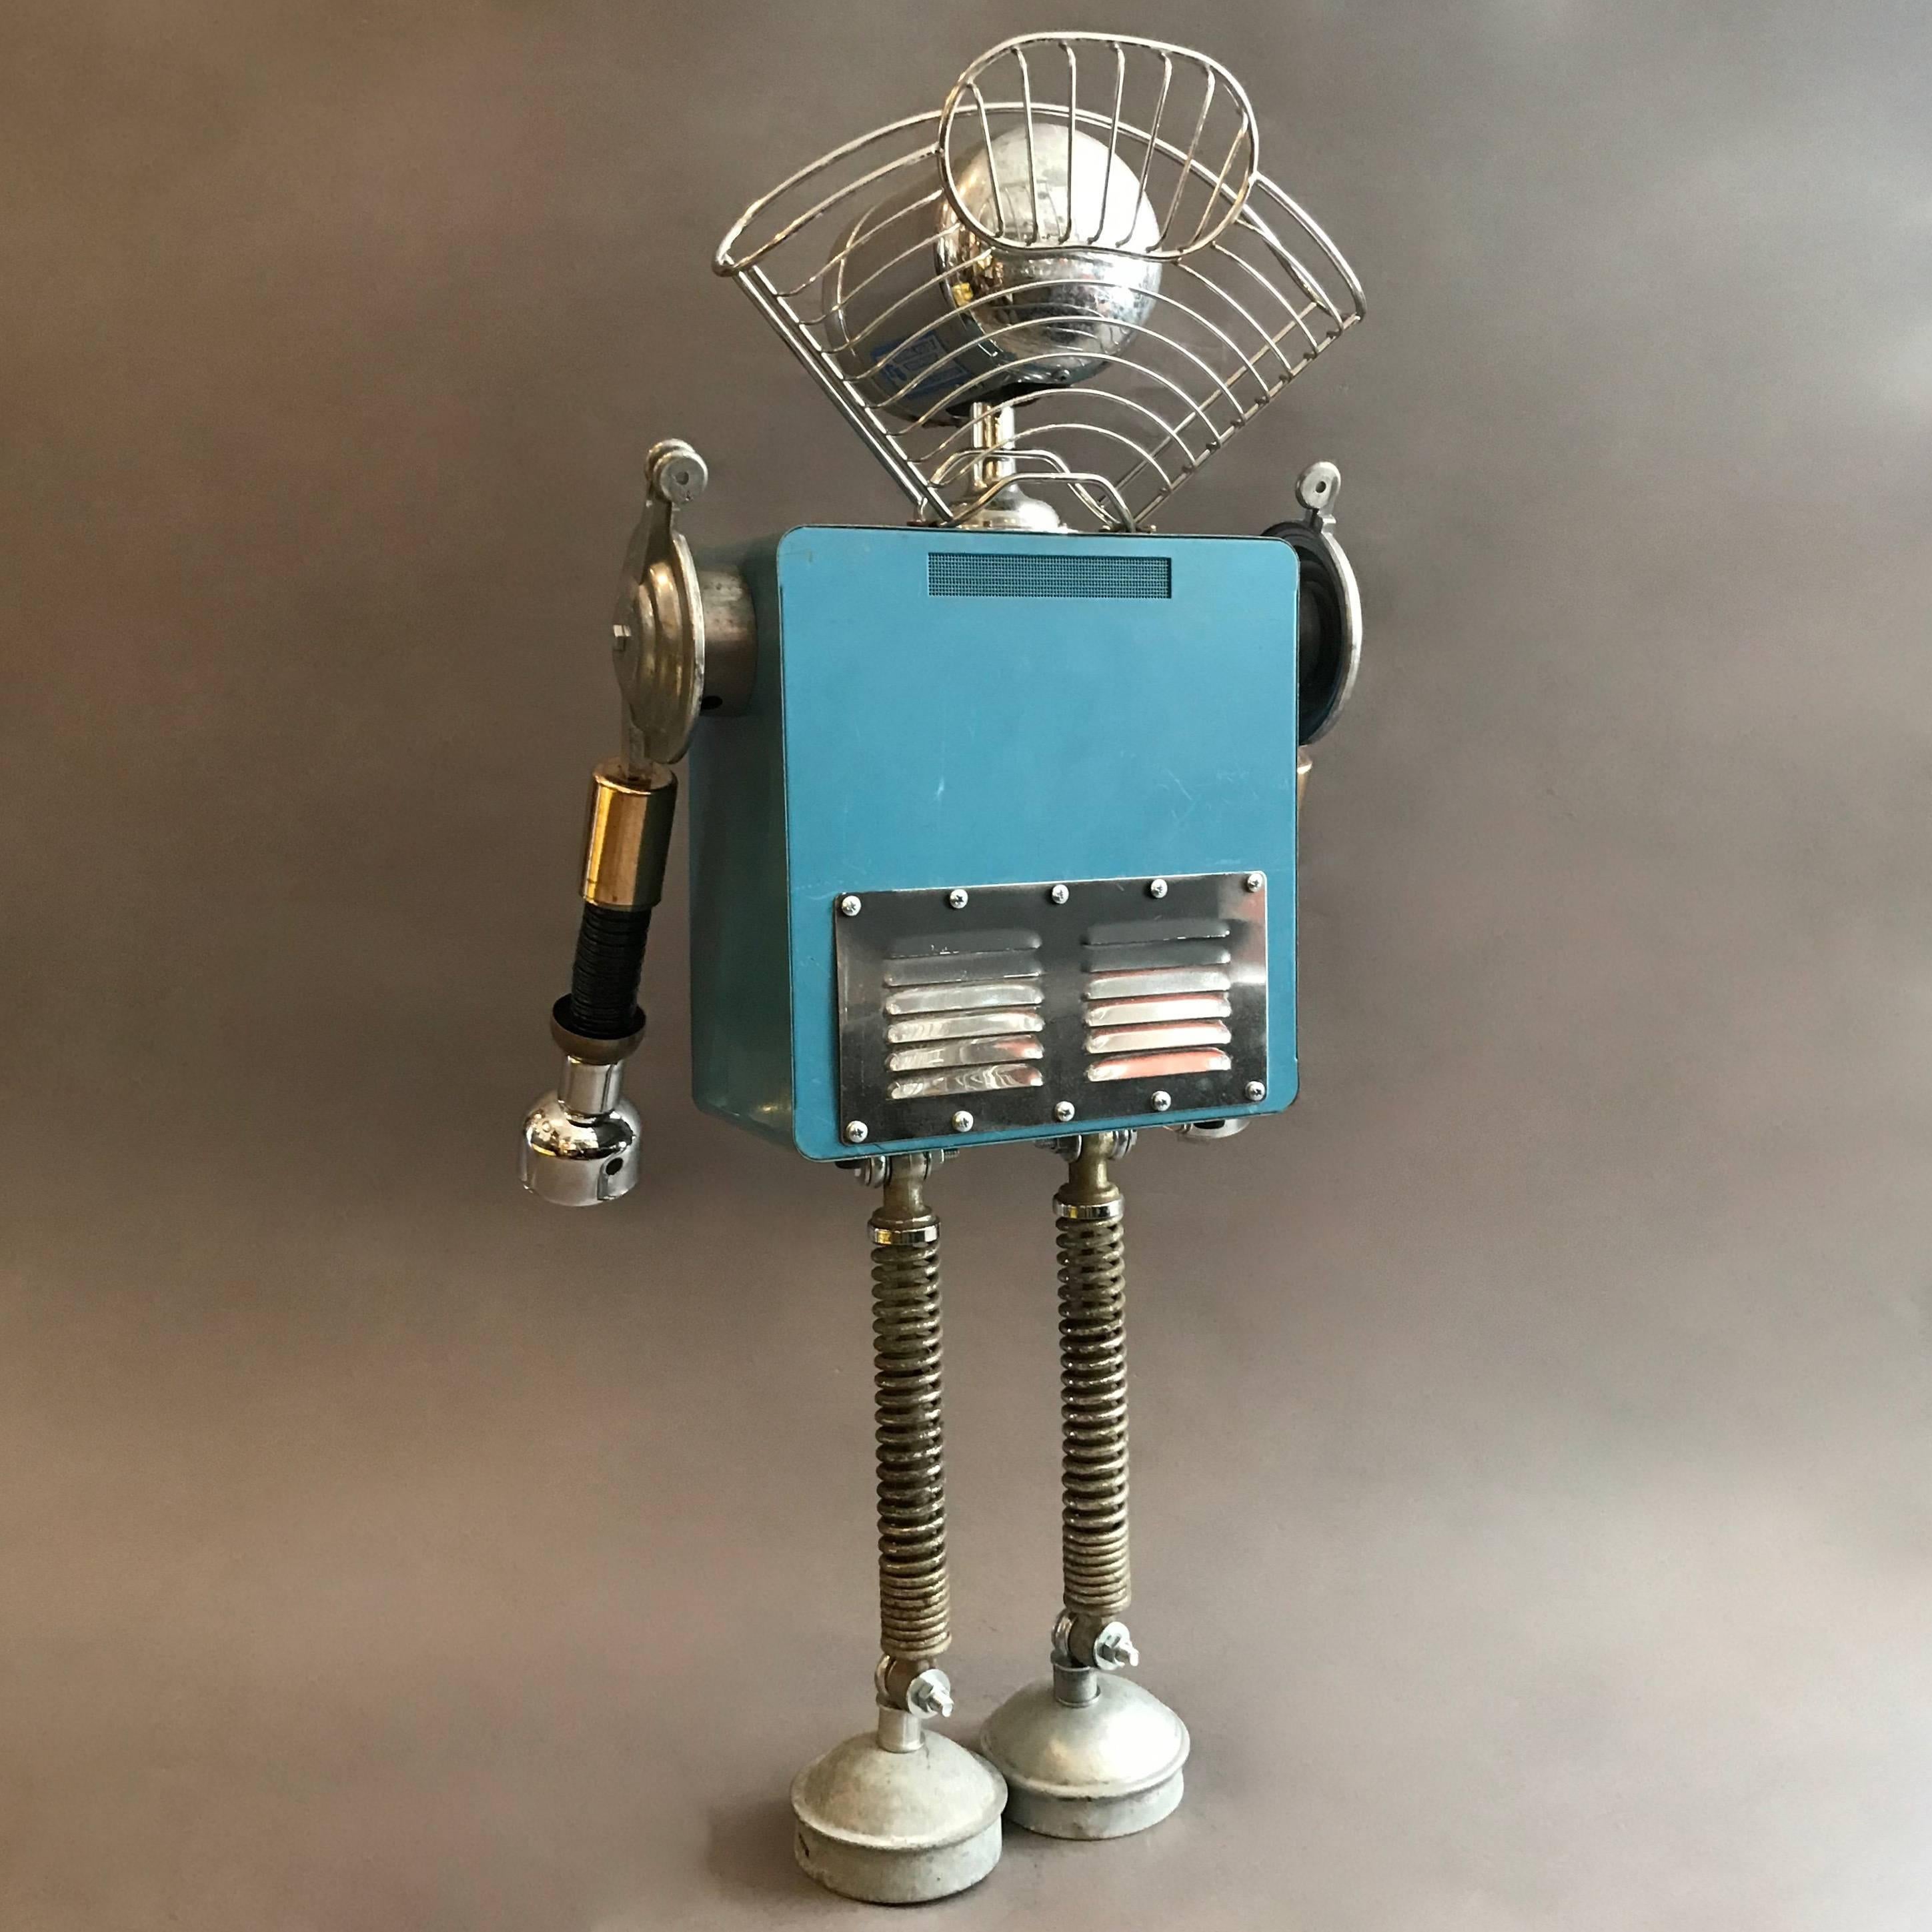 American Welch Robot Sculpture by Bennett Robot Works